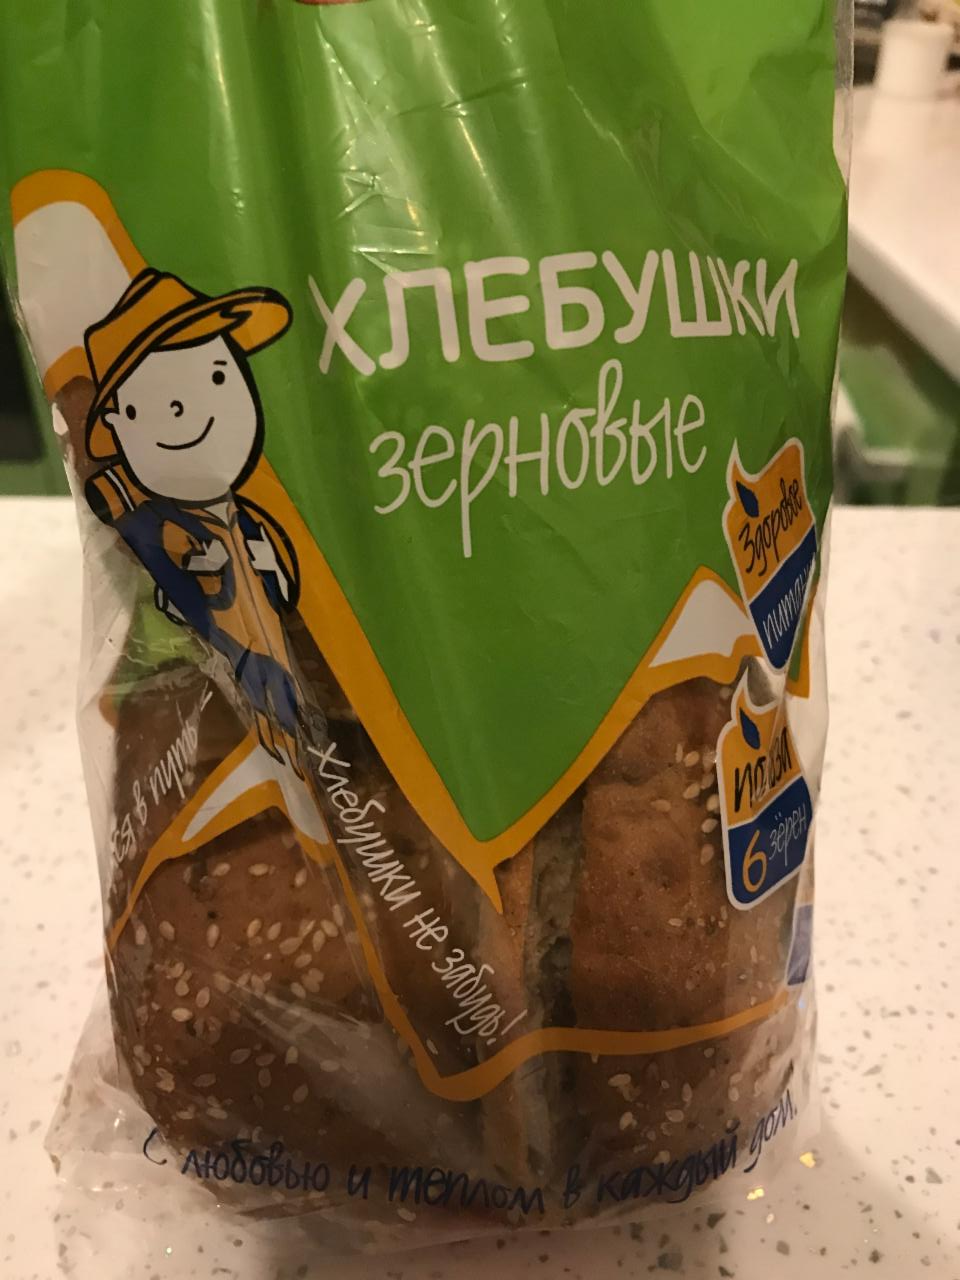 Фото - Хлебушки зерновые Беляевский хлеб